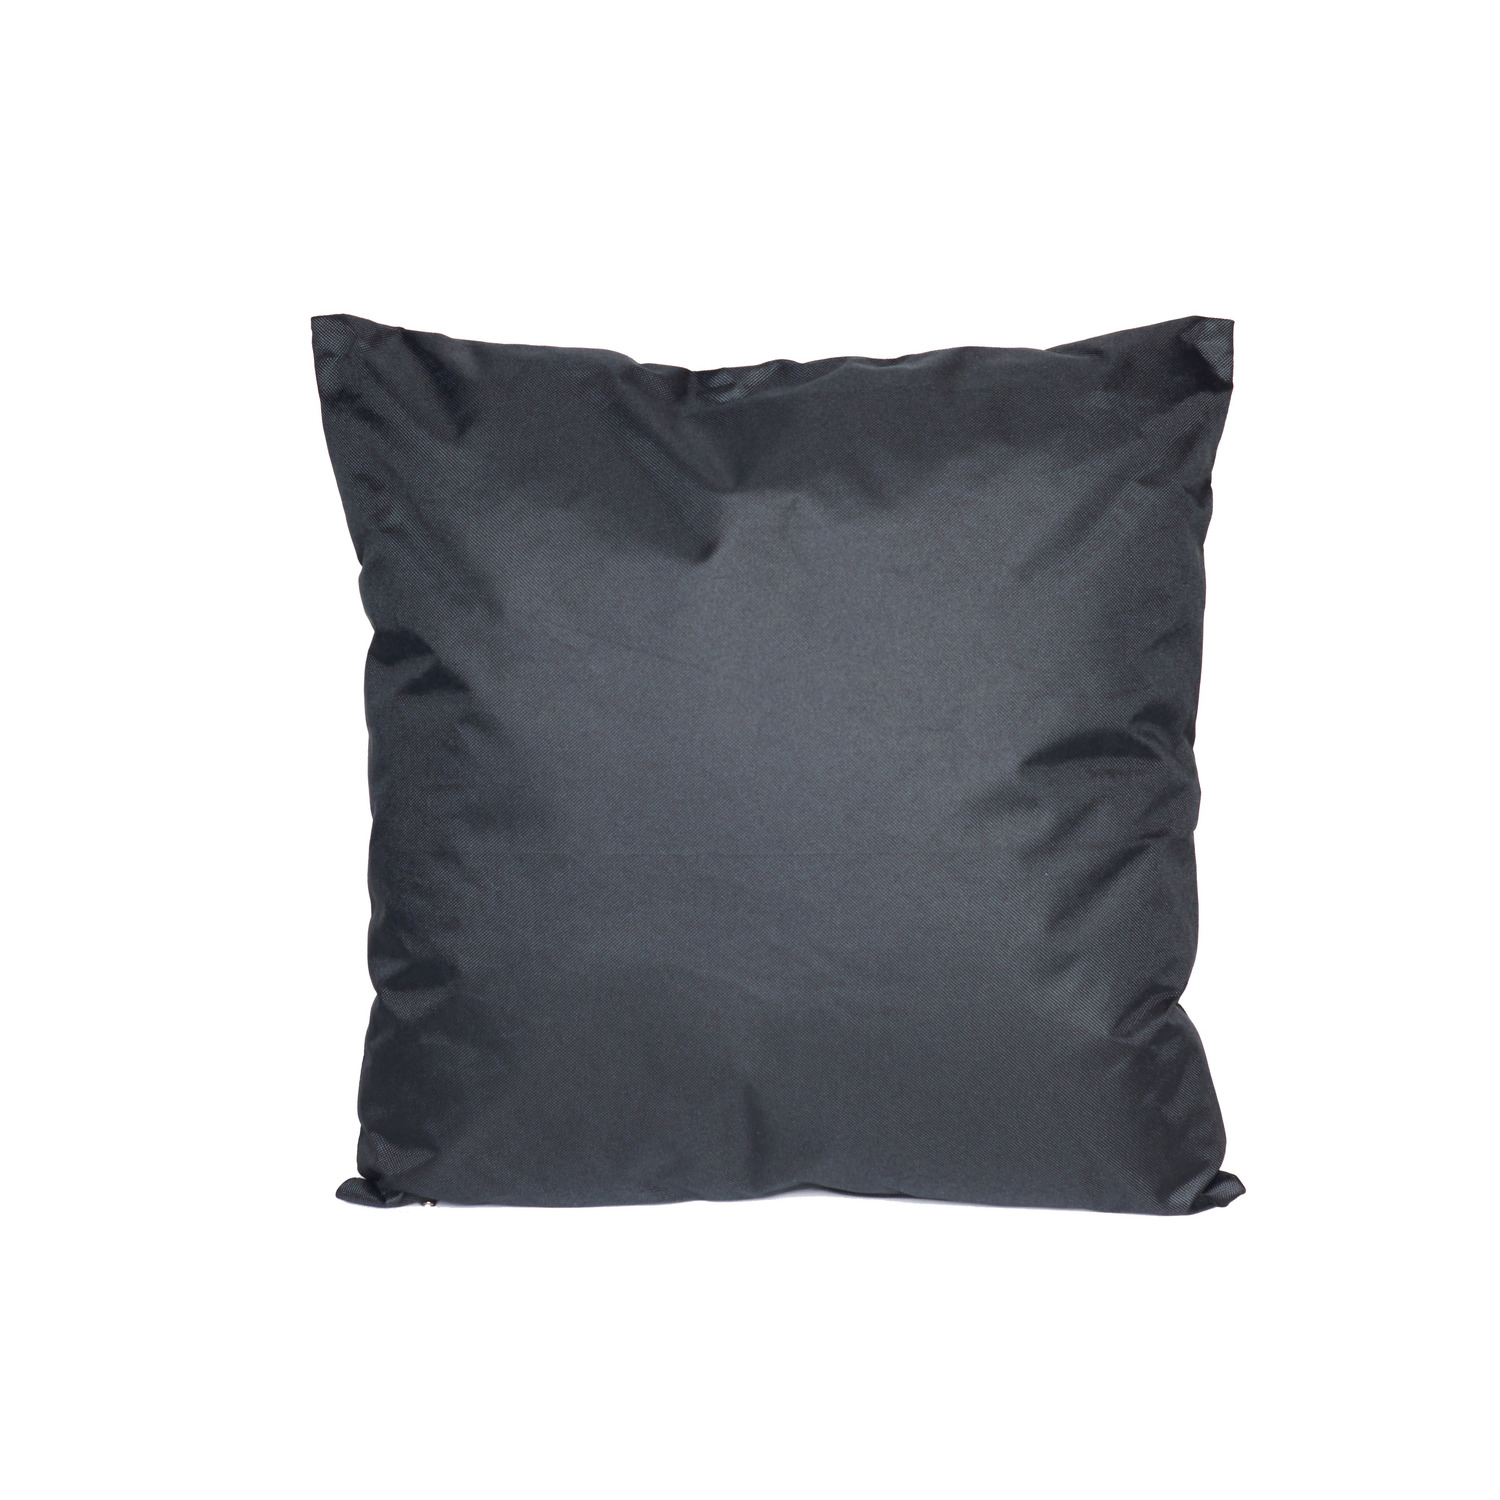 Bank-Sier kussens voor binnen en buiten in de kleur zwart 45 x 45 cm